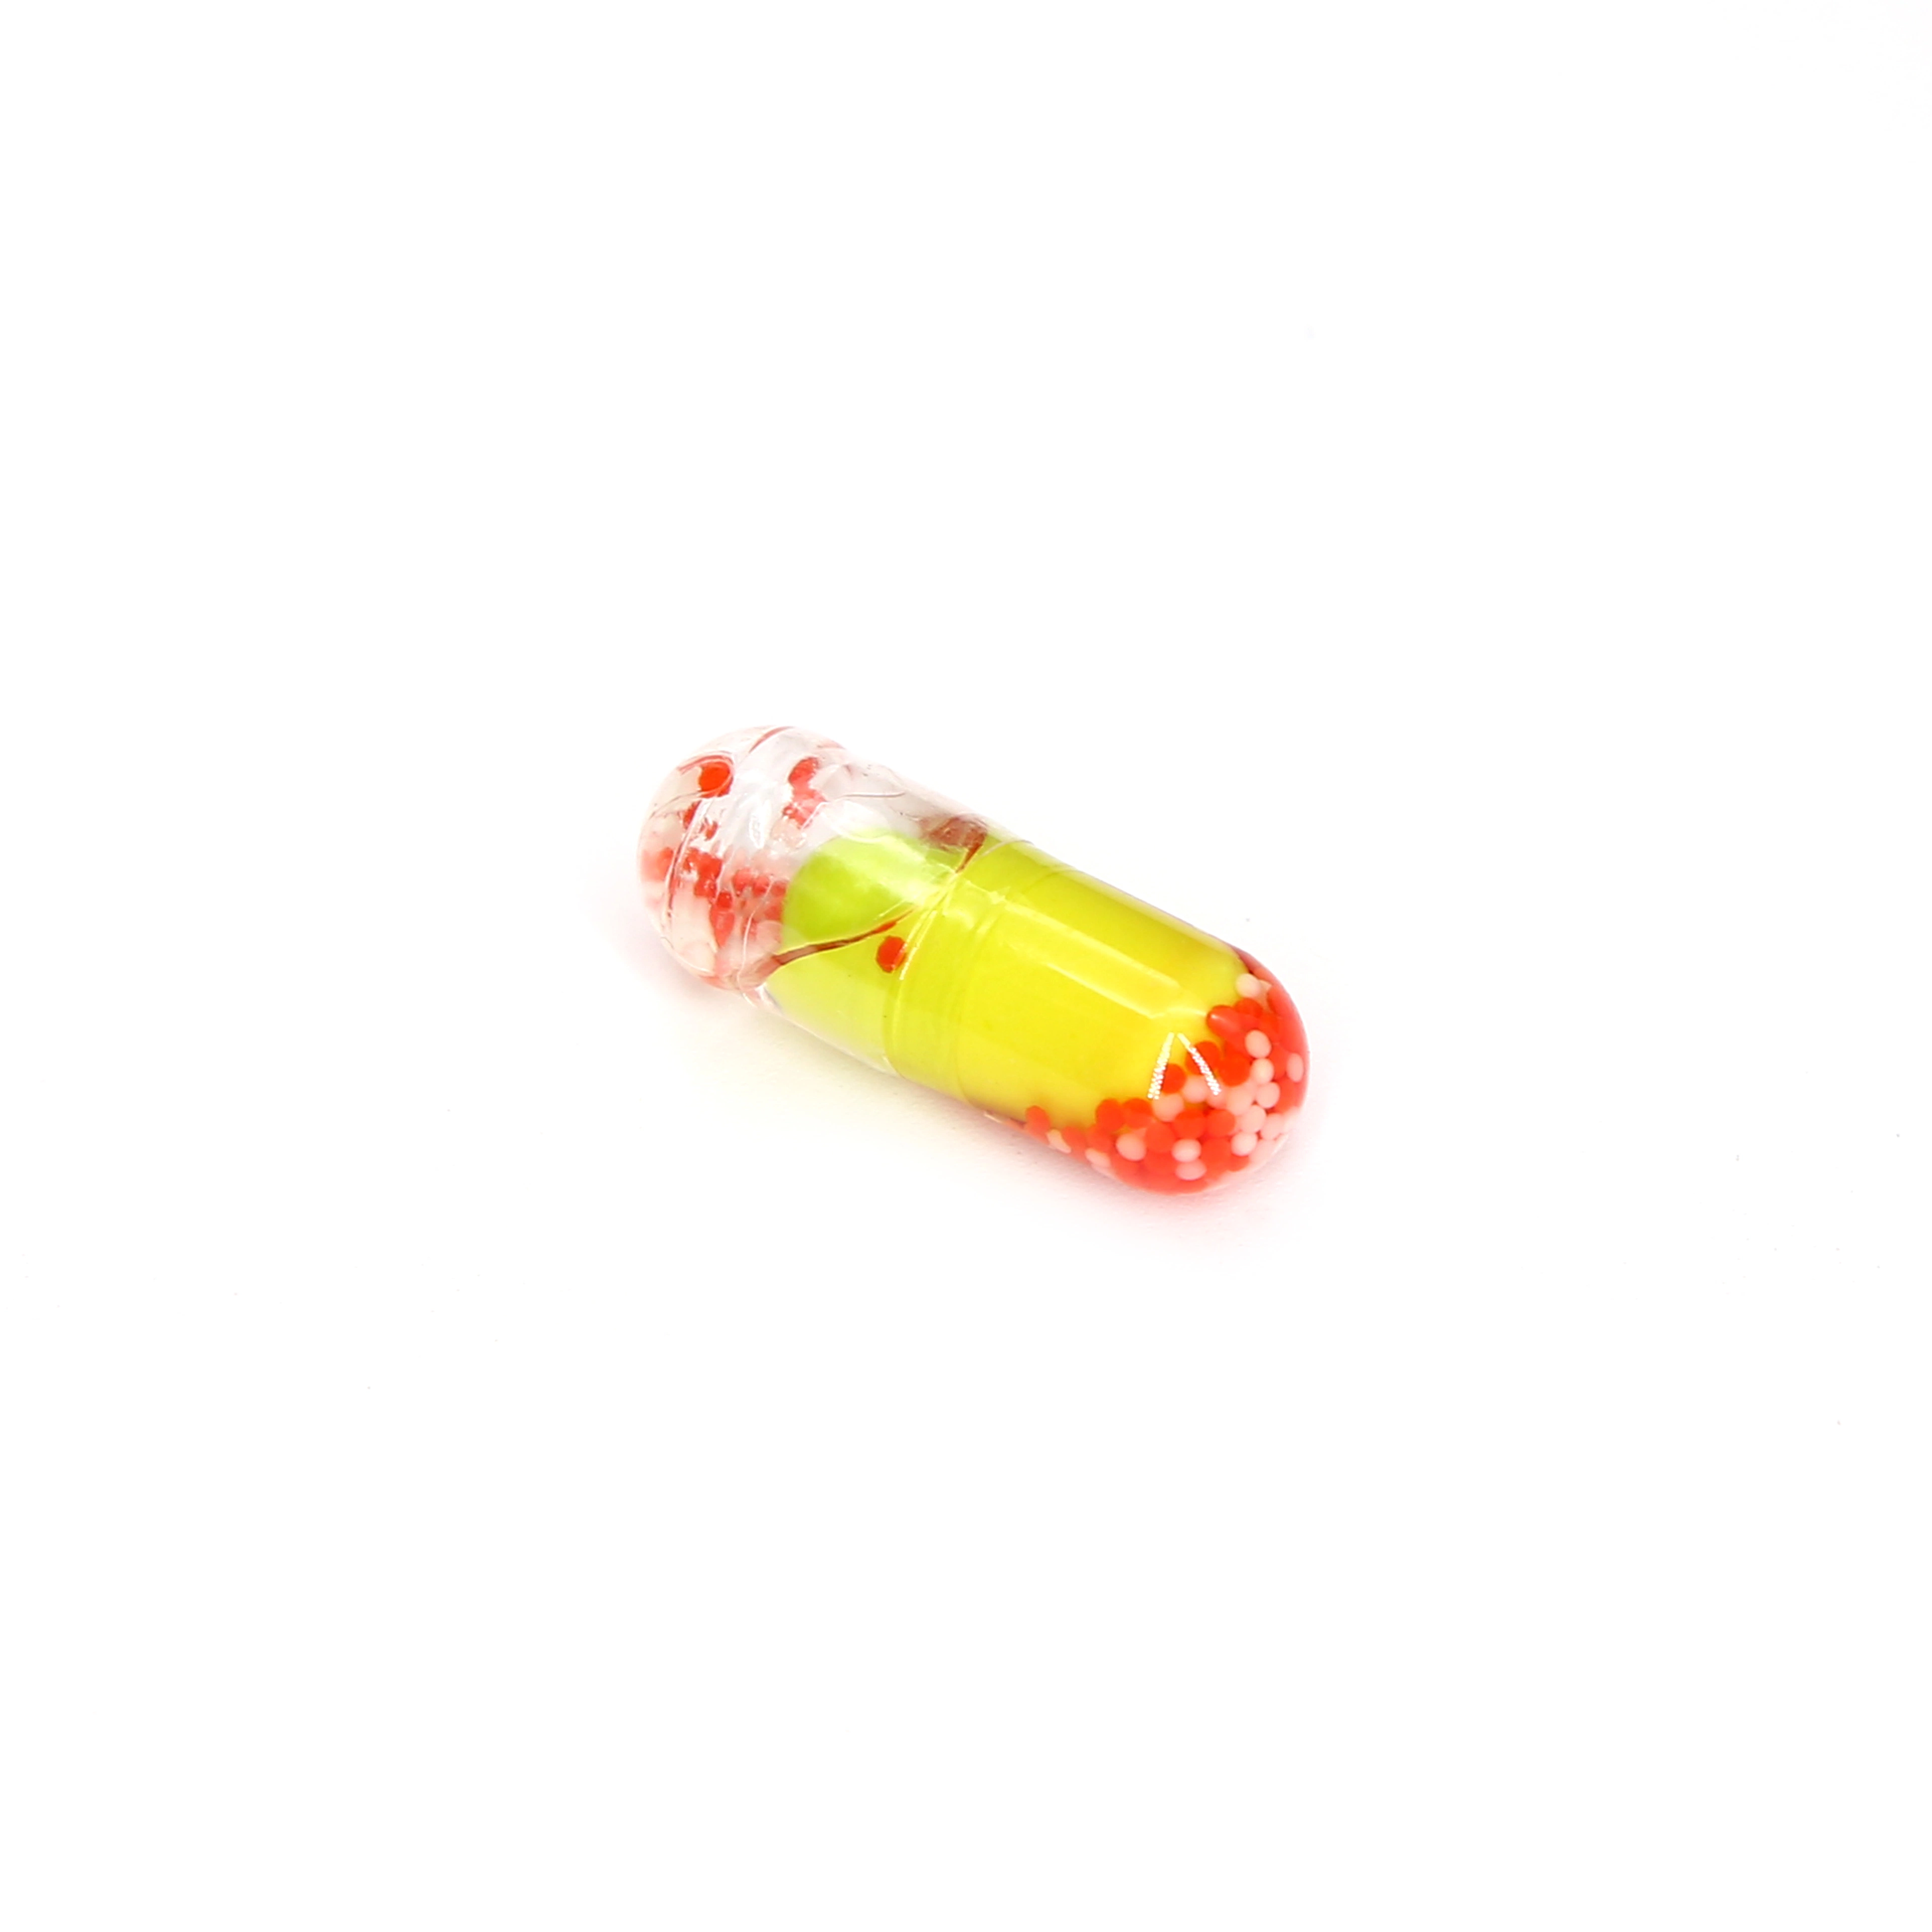 Tablettes personnalisées, capsules dures, capsules souples